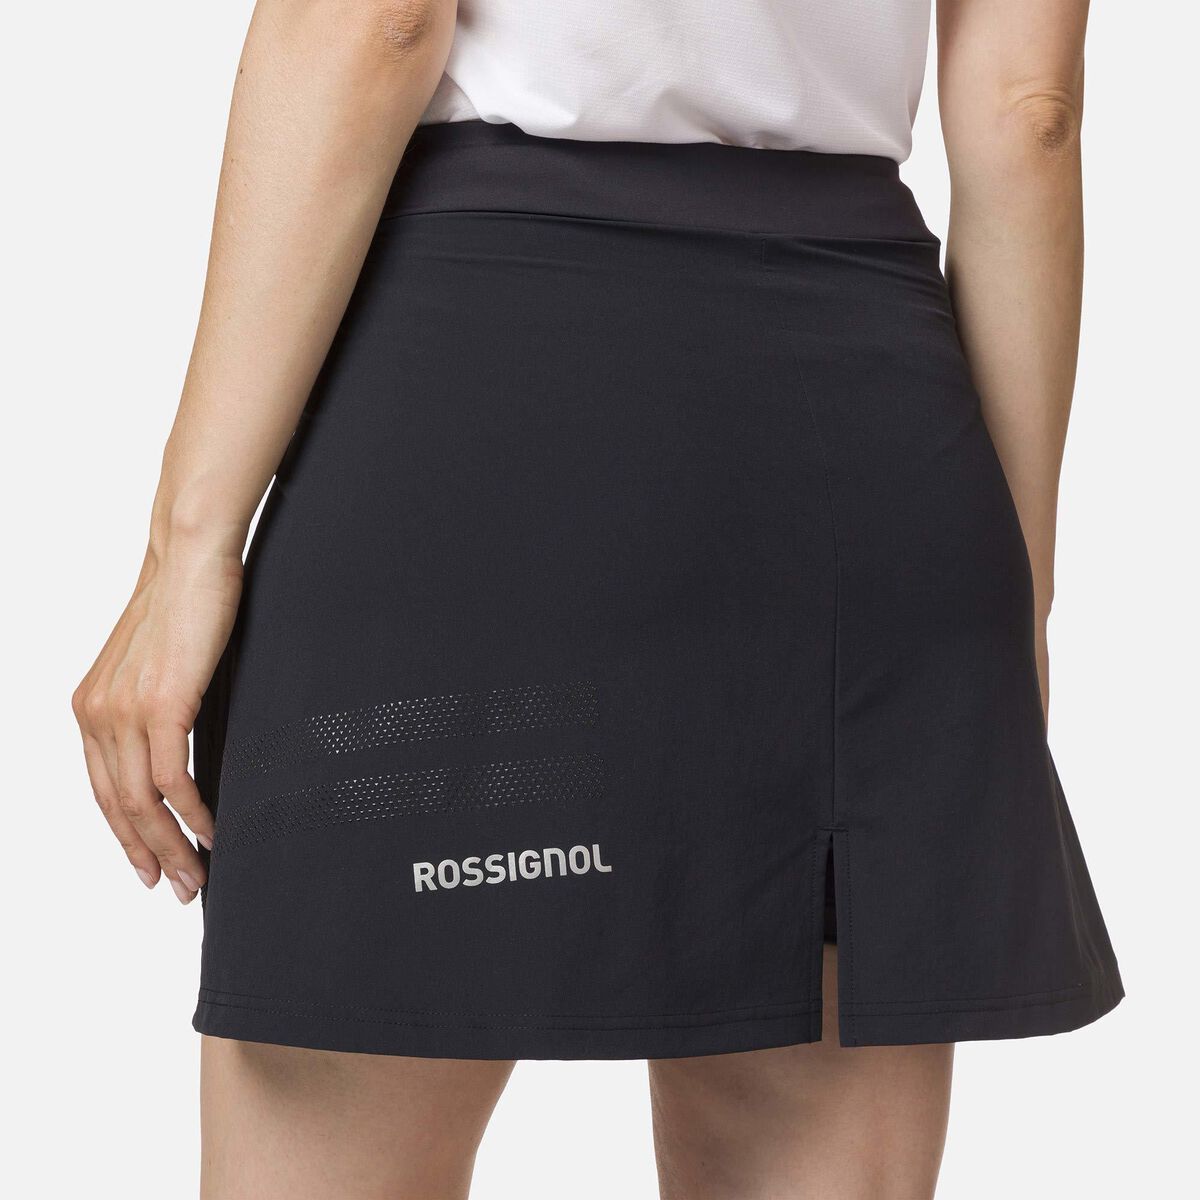 Women's lightweight breathable skirt